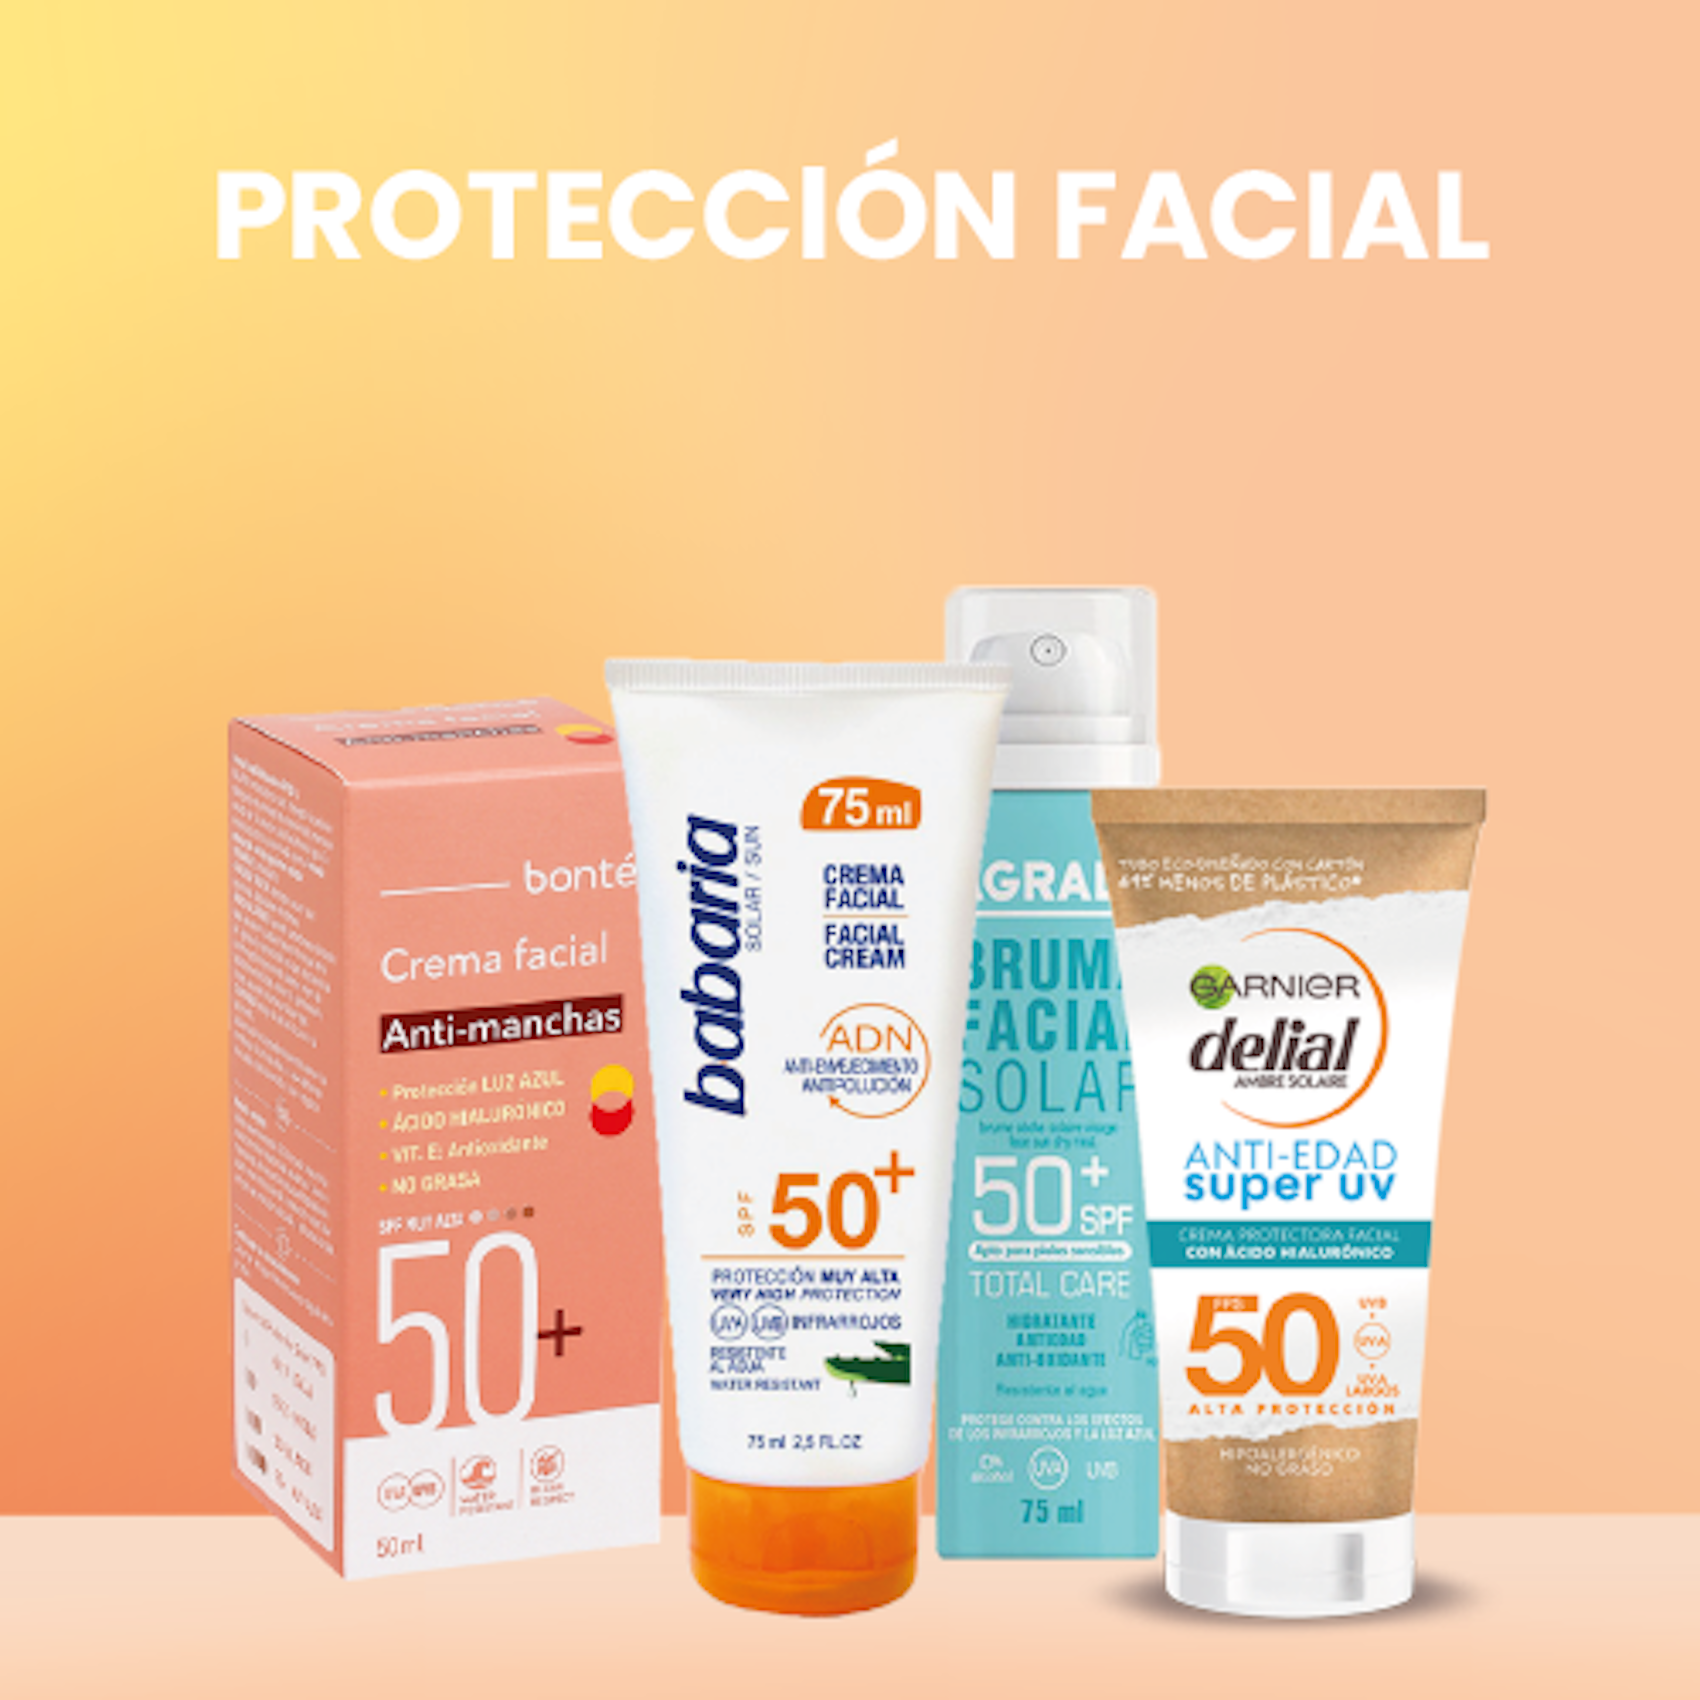 Protección facial